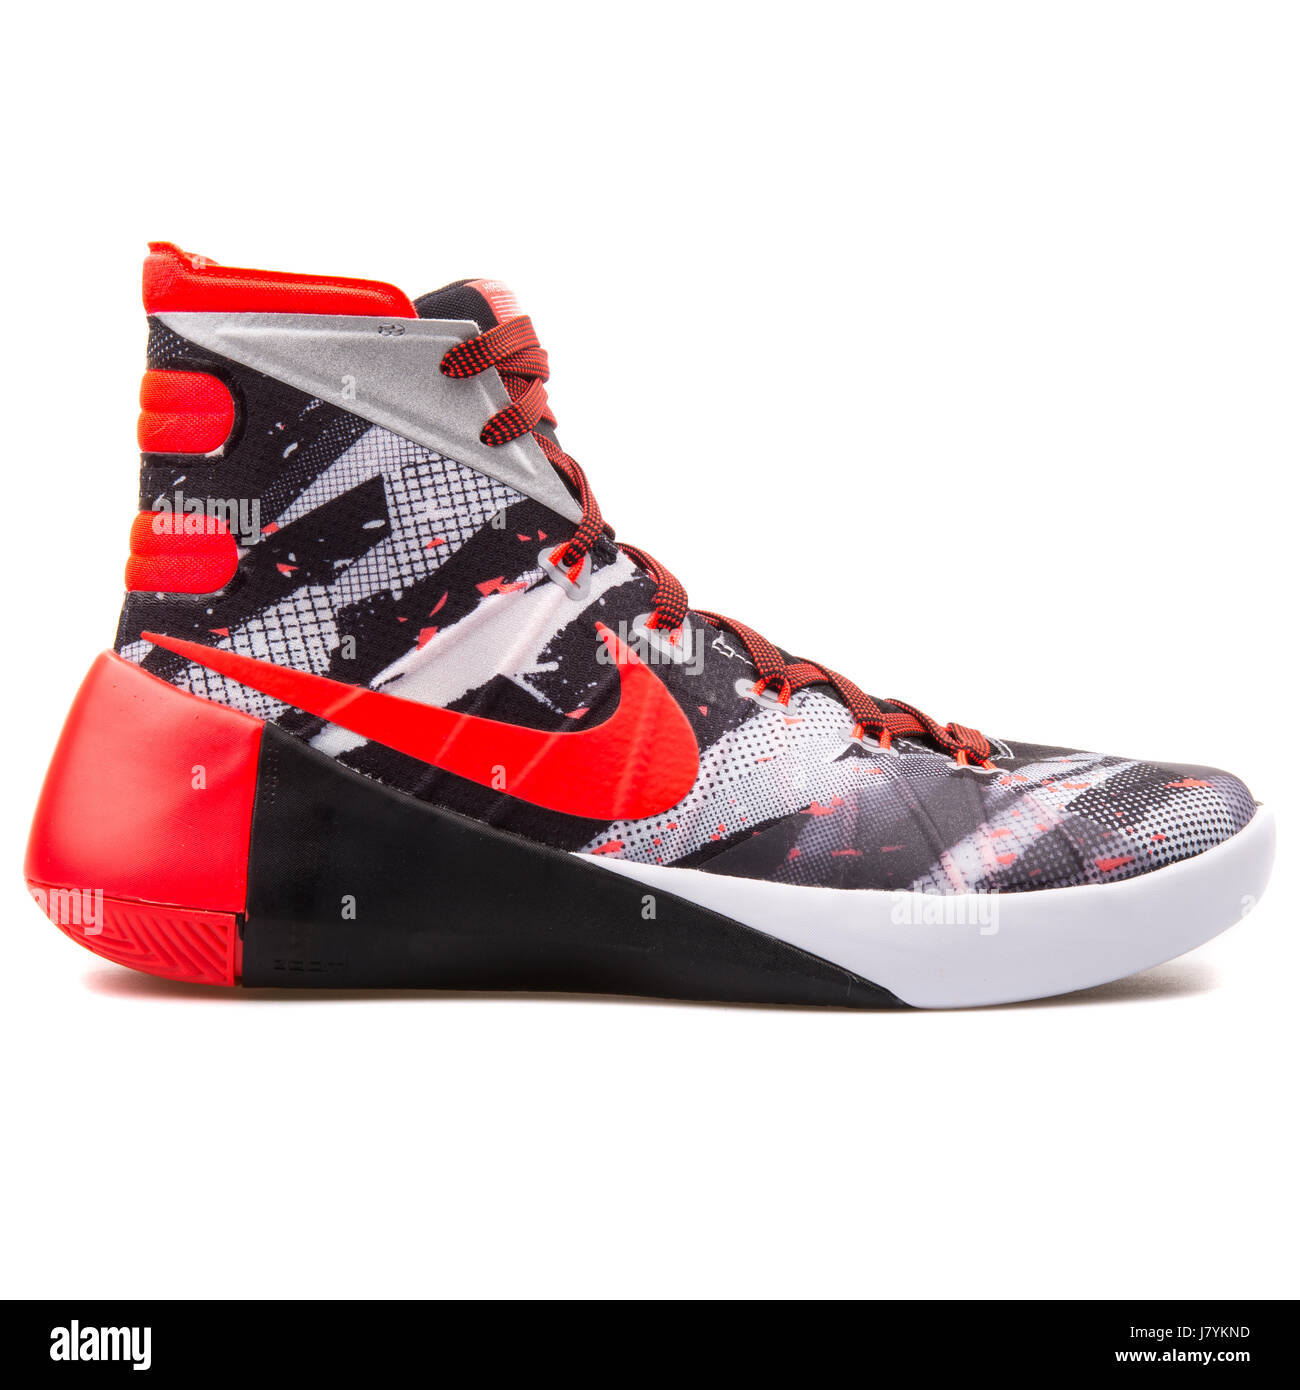 Nike Hyperdunk zapatillas de baloncesto masculino - 749567-160 Fotografía de stock - Alamy